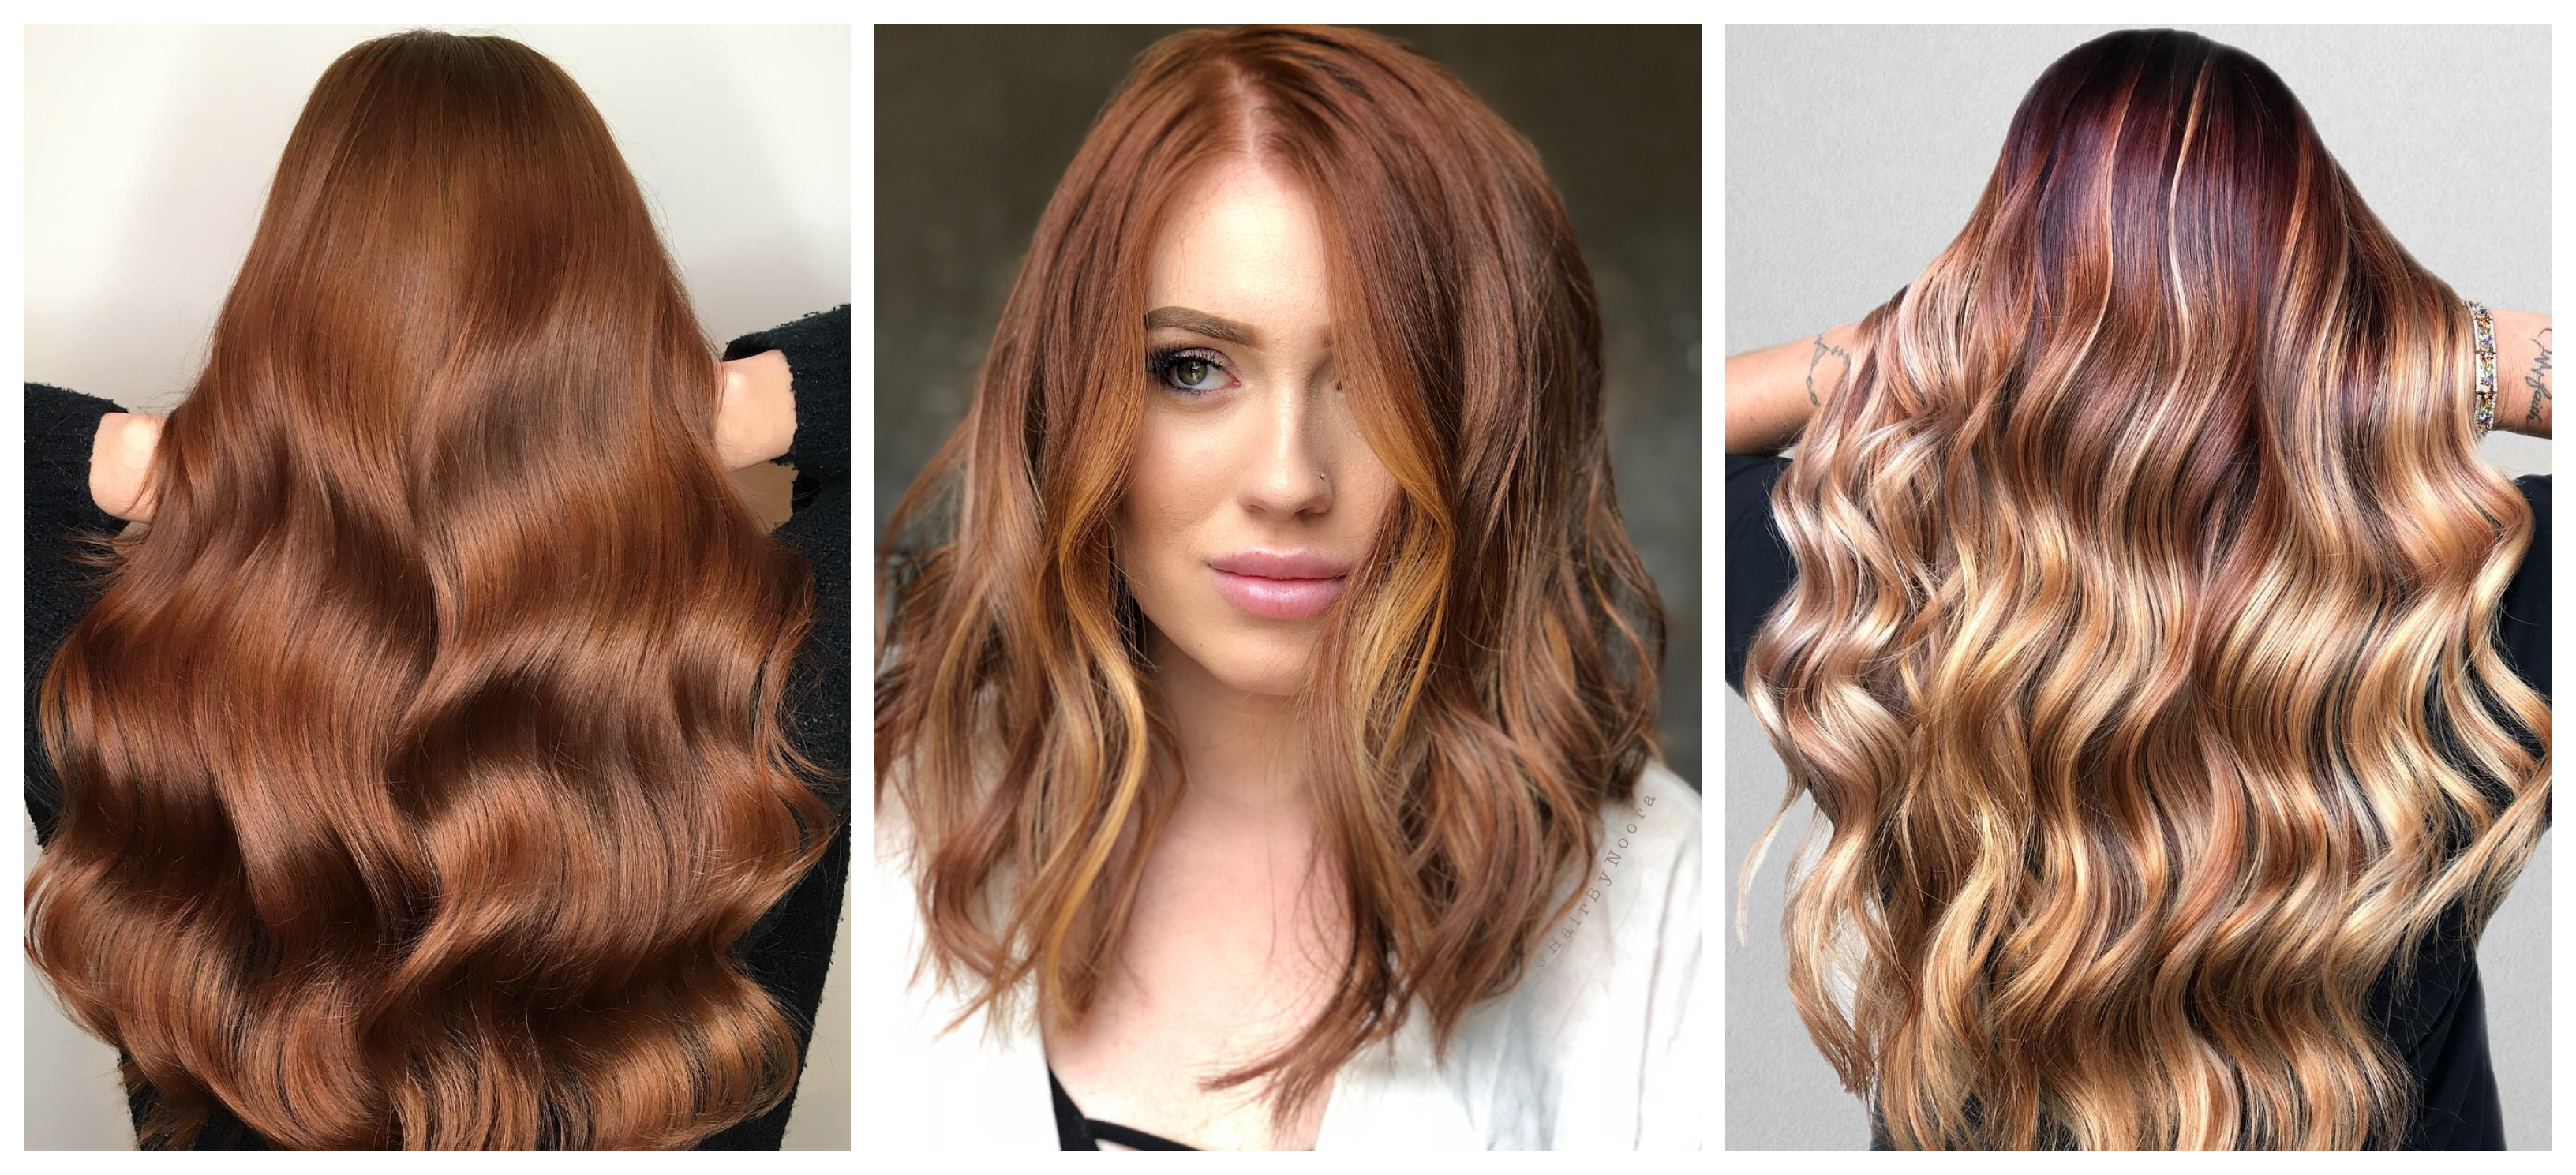 Auburn Hair Color Trend